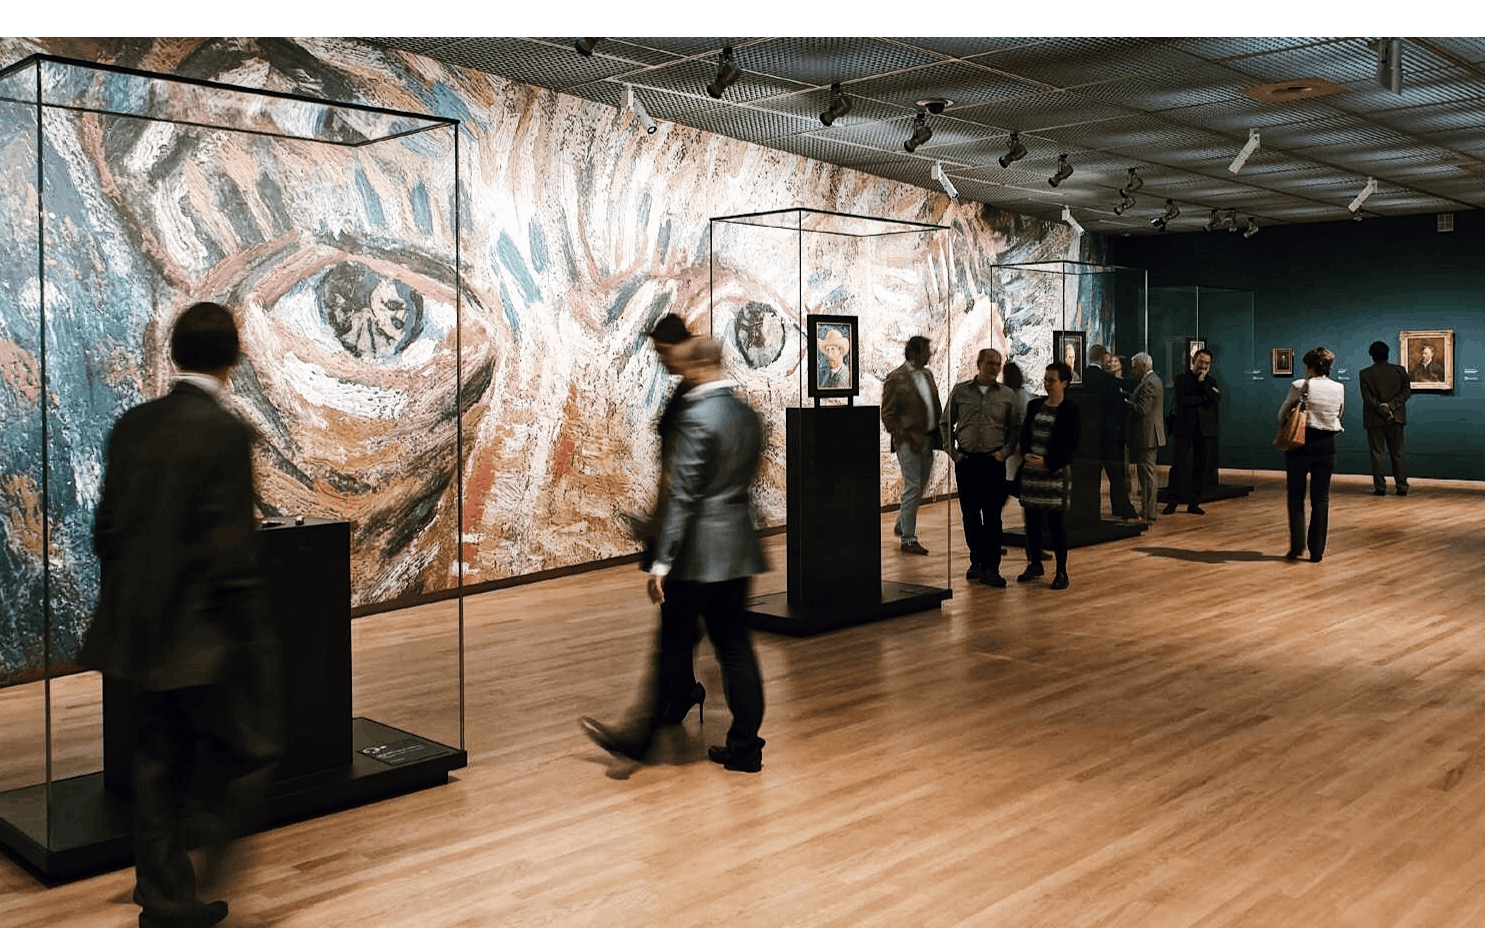 Visita guiada privada pelo Rijksmuseum e pelo Museu Van Gogh